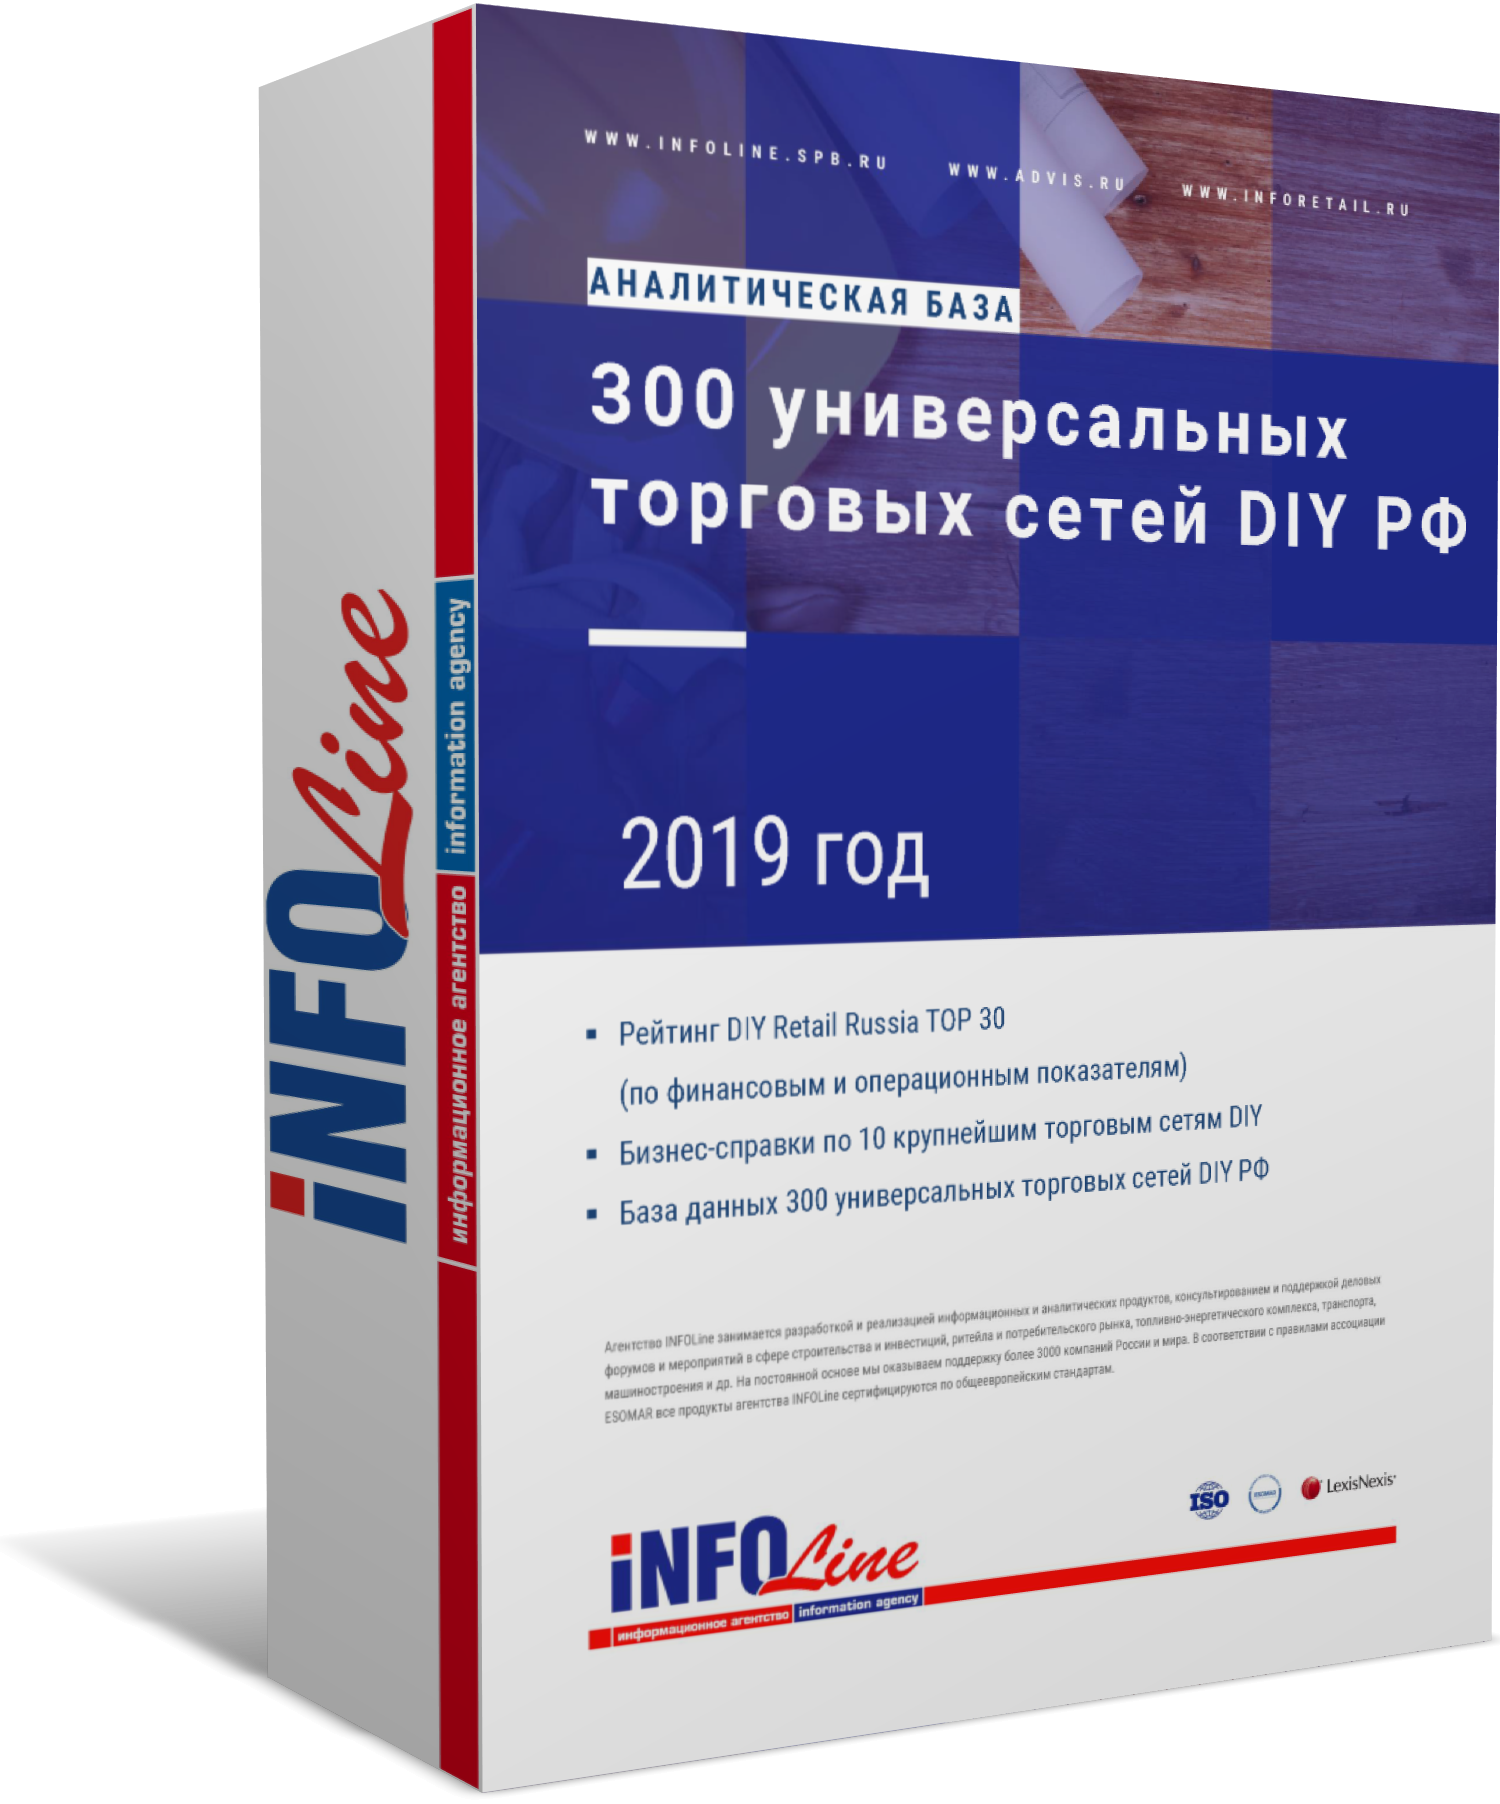 Аналитическая база: "300 универсальных торговых сетей DIY РФ. 2019 год" (доступна обновленная версия)